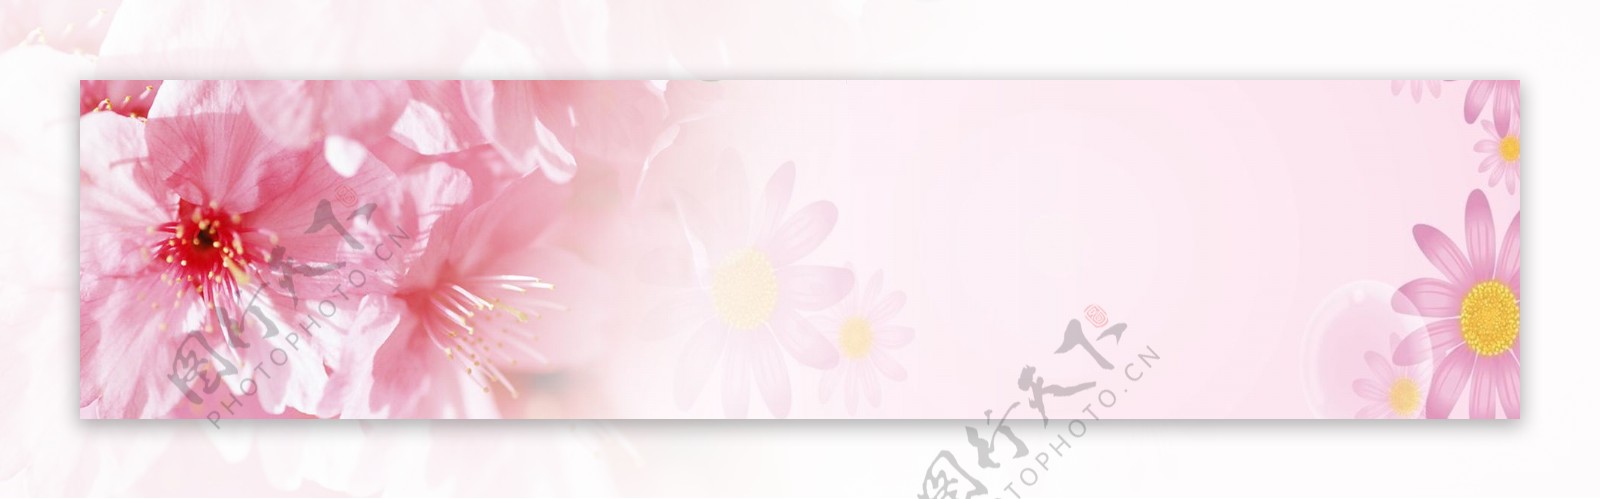 春季粉色花朵底纹背景图